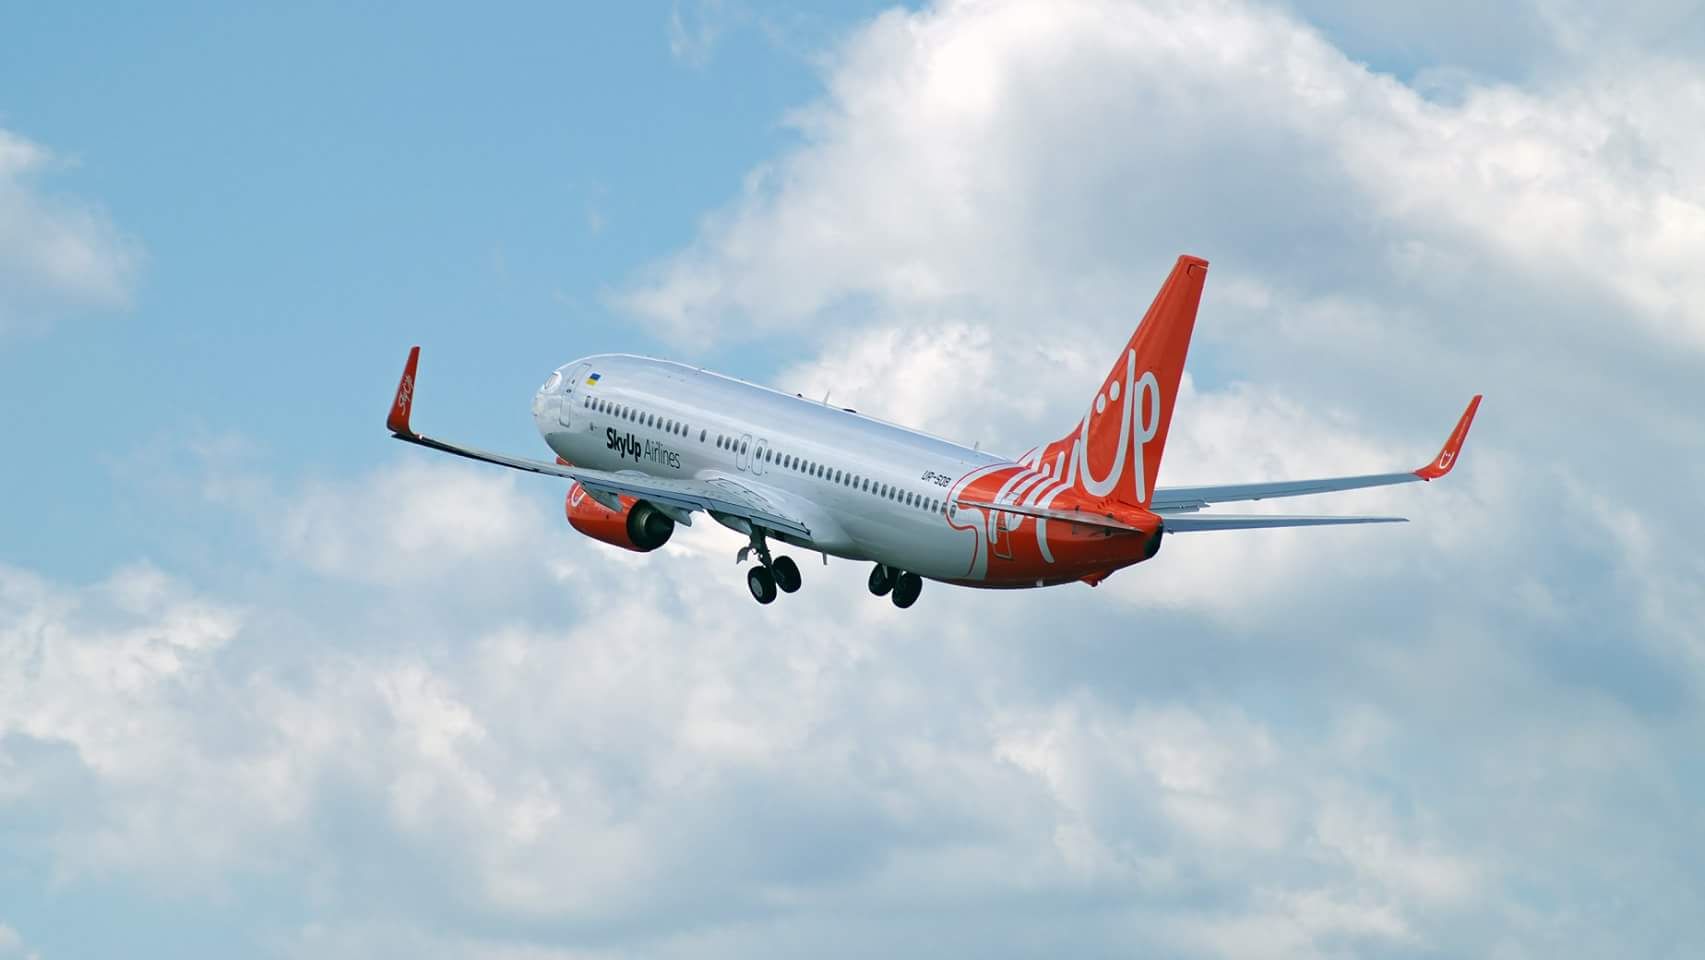 SkyUp планирует начать в 2019 году полеты из аэропорта Черкассы